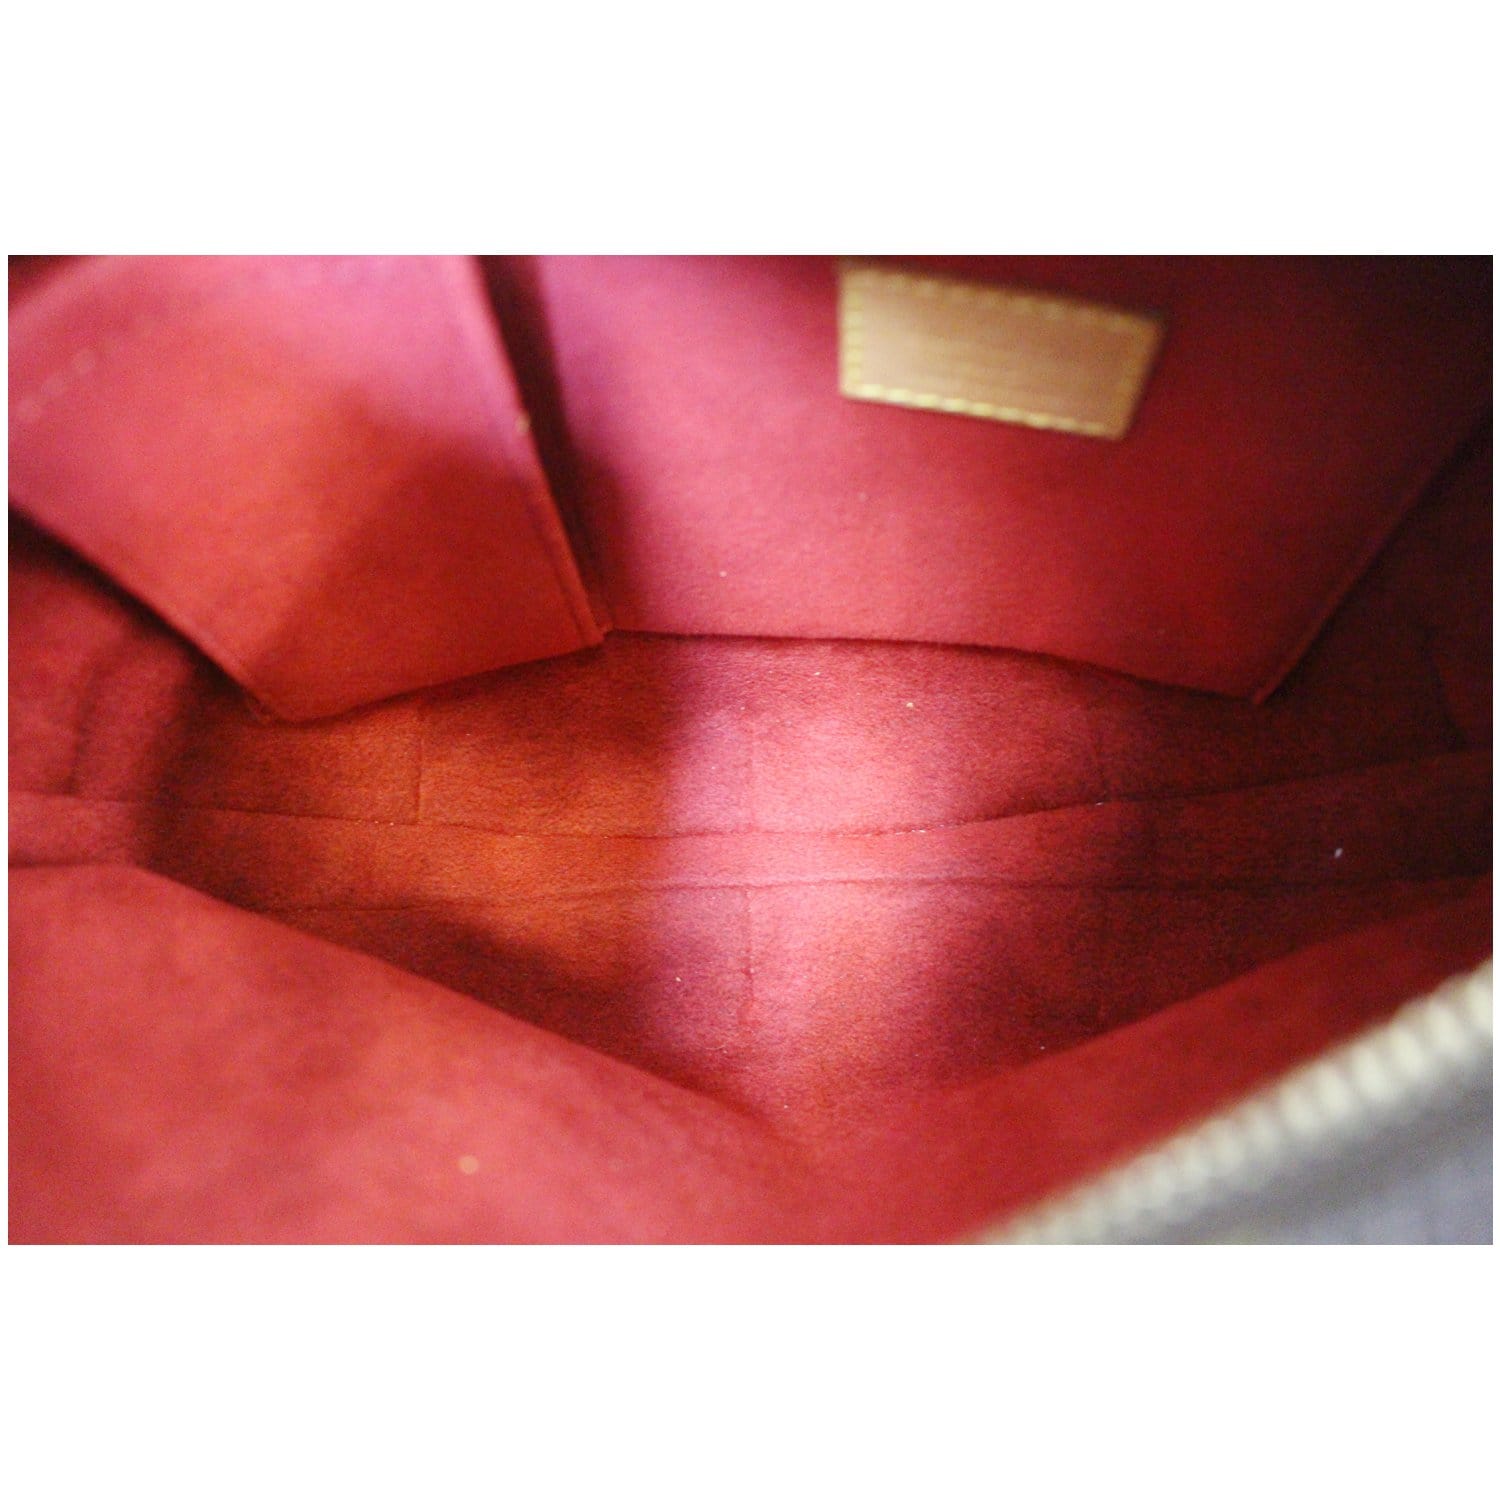 Authenticated used Louis Vuitton Monogram Croissant mm M51512 Shoulder Bag 0164 Louis Vuitton, Women's, Size: (HxWxD): 22cm x 31cm x 6cm / 8.66'' x